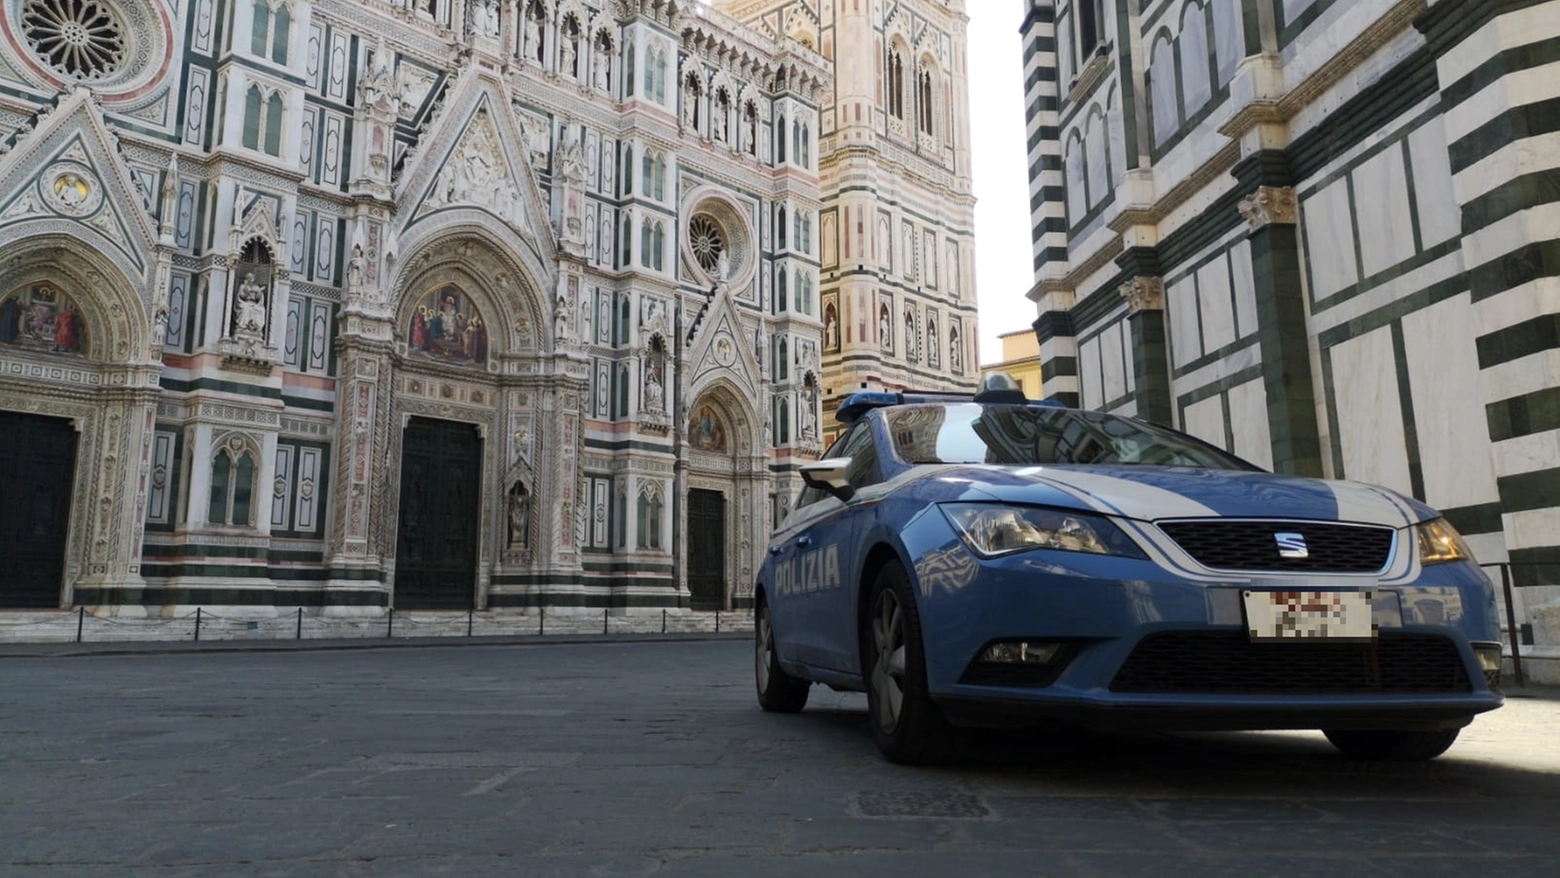 Una volante della polizia in piazza Duomo a Firenze (foto repertorio)